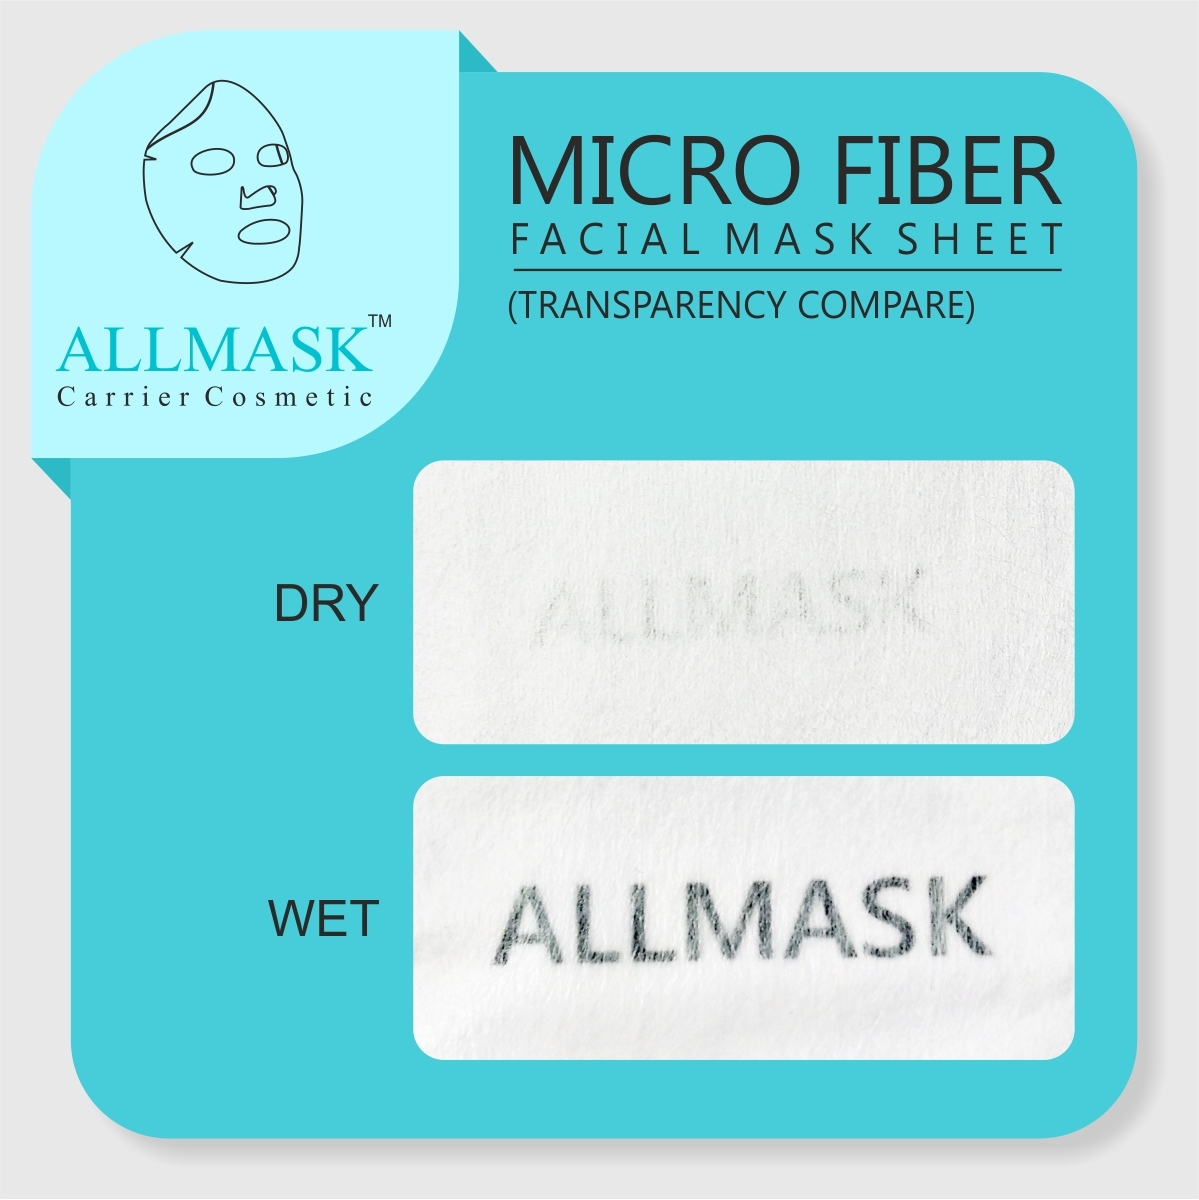 Micro Fiber Facial Mask Sheet - 100% Original - ODM/OEM Customization Available